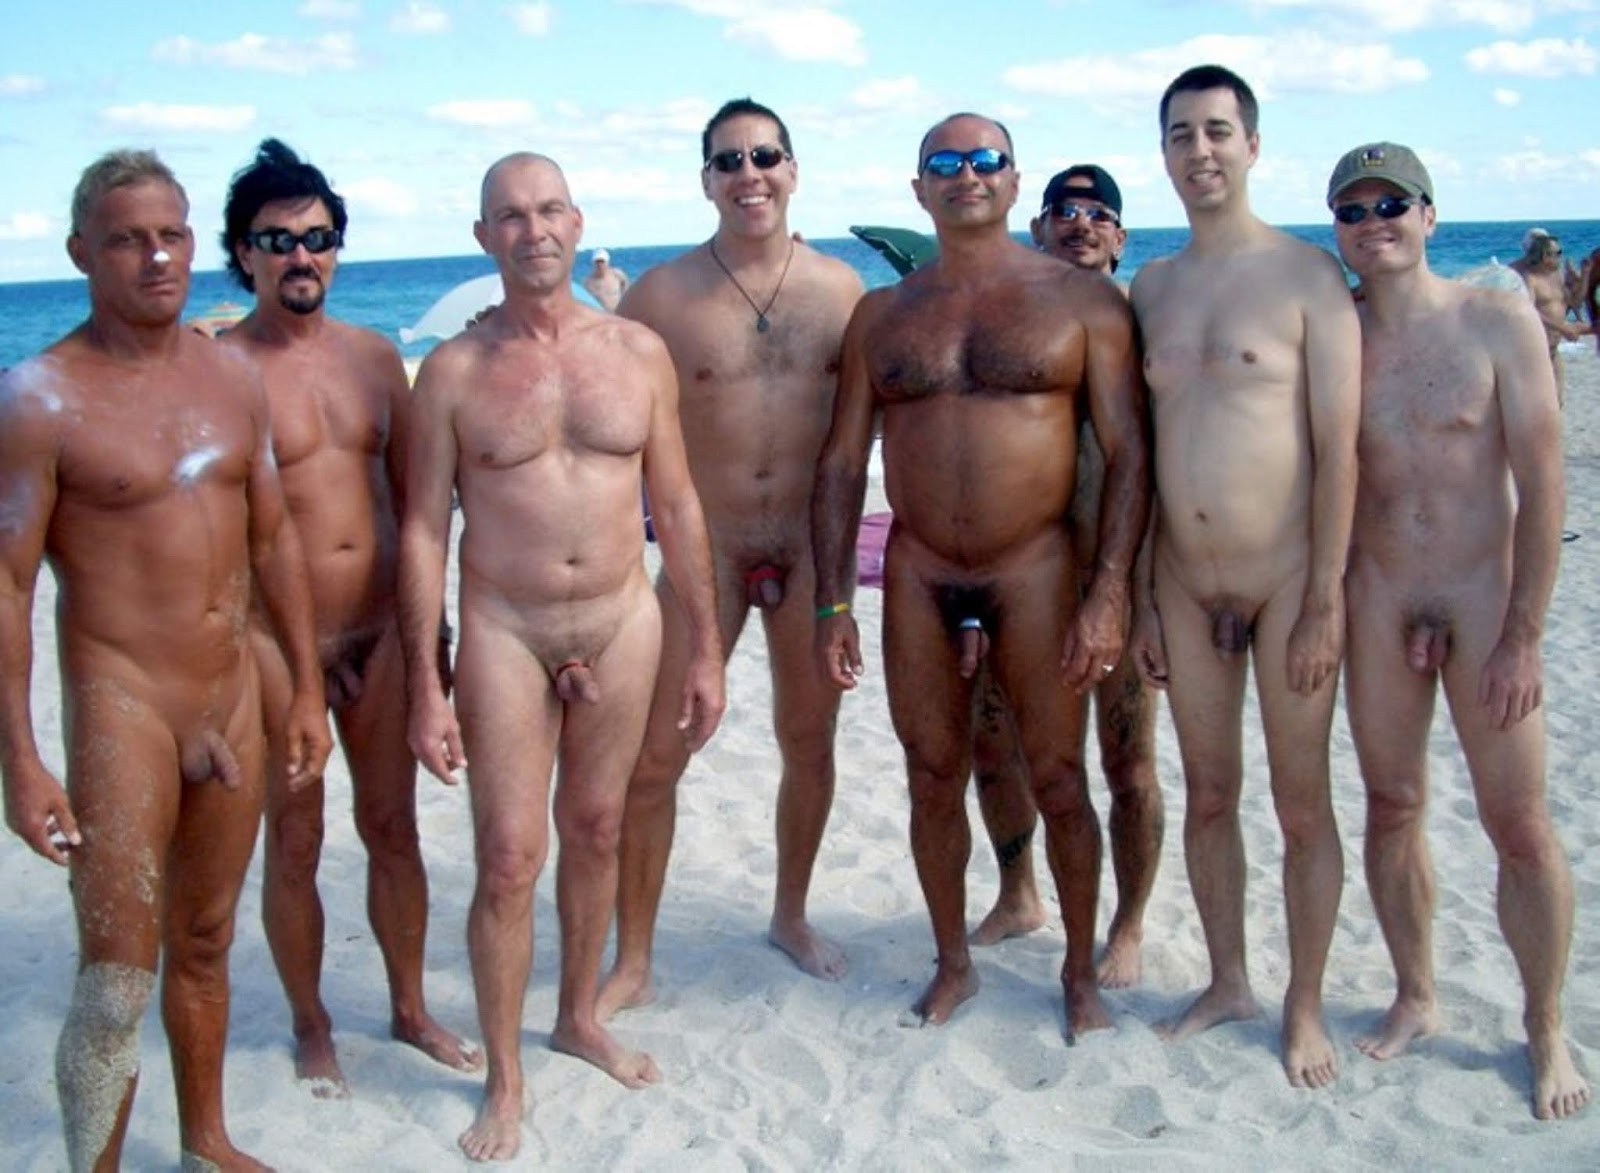 нудистский пляж члены мужчин фото 70